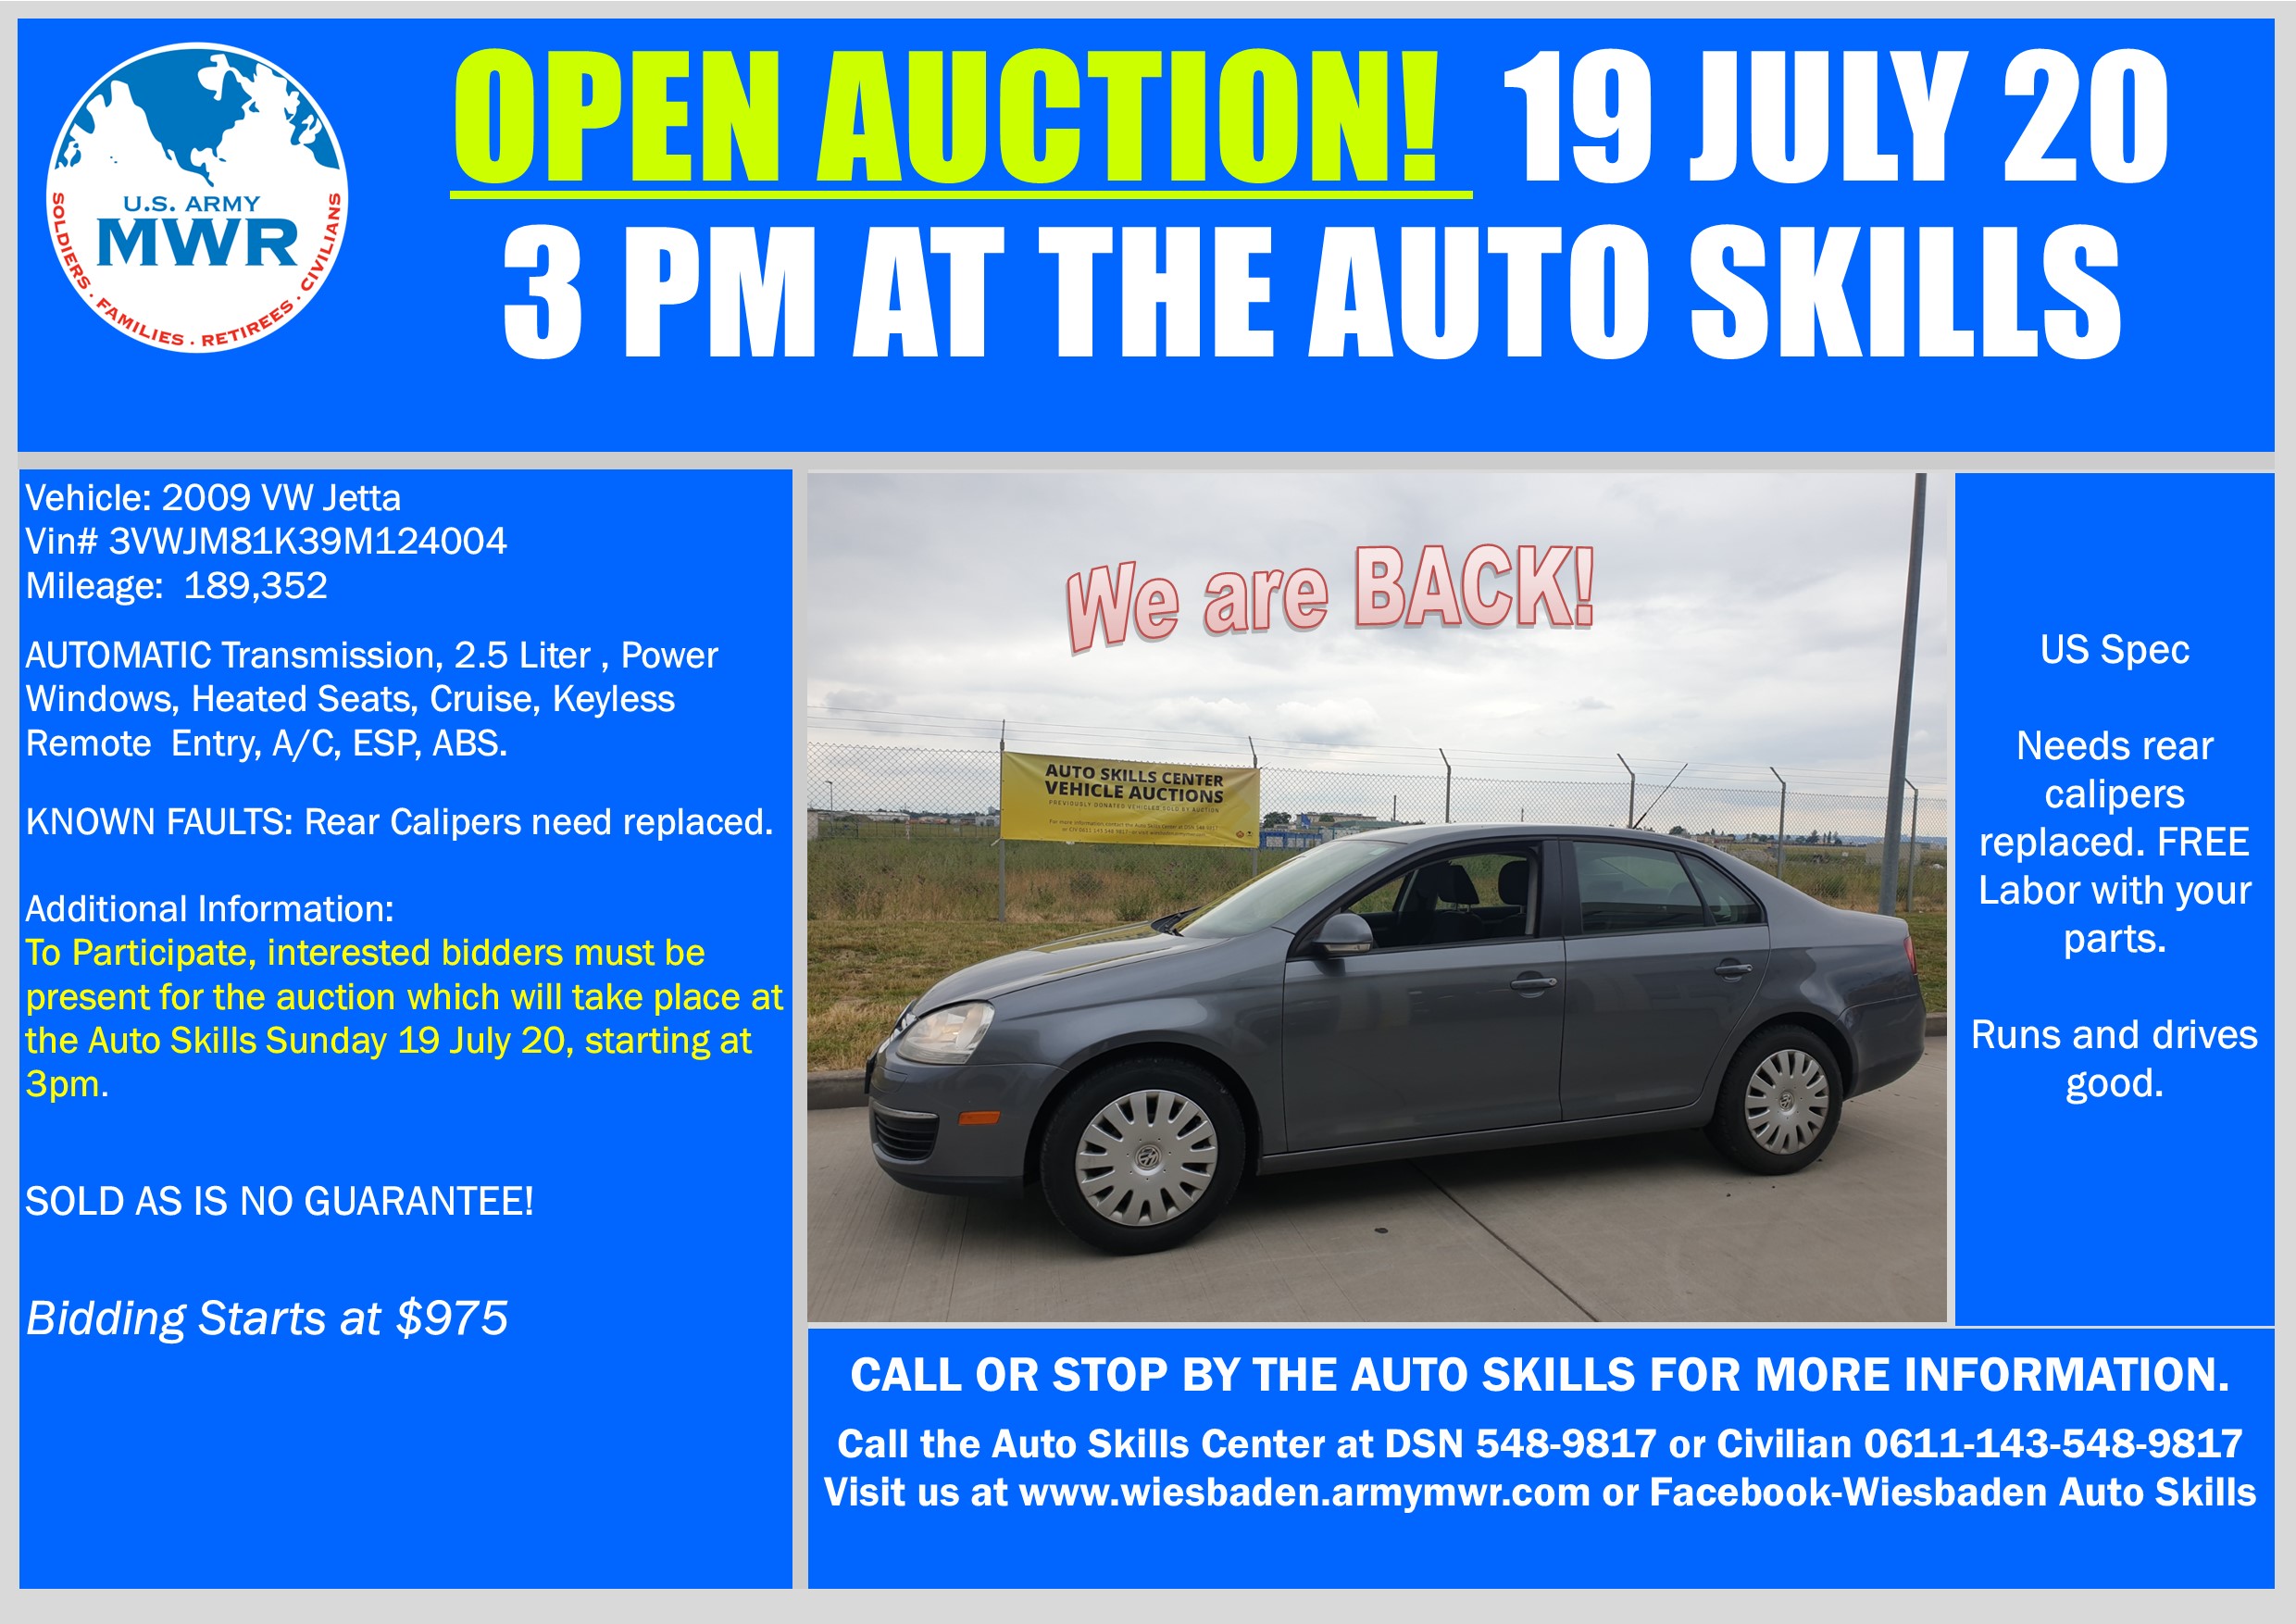 Sale VW Jetta Open Auction 19 July 20.jpg